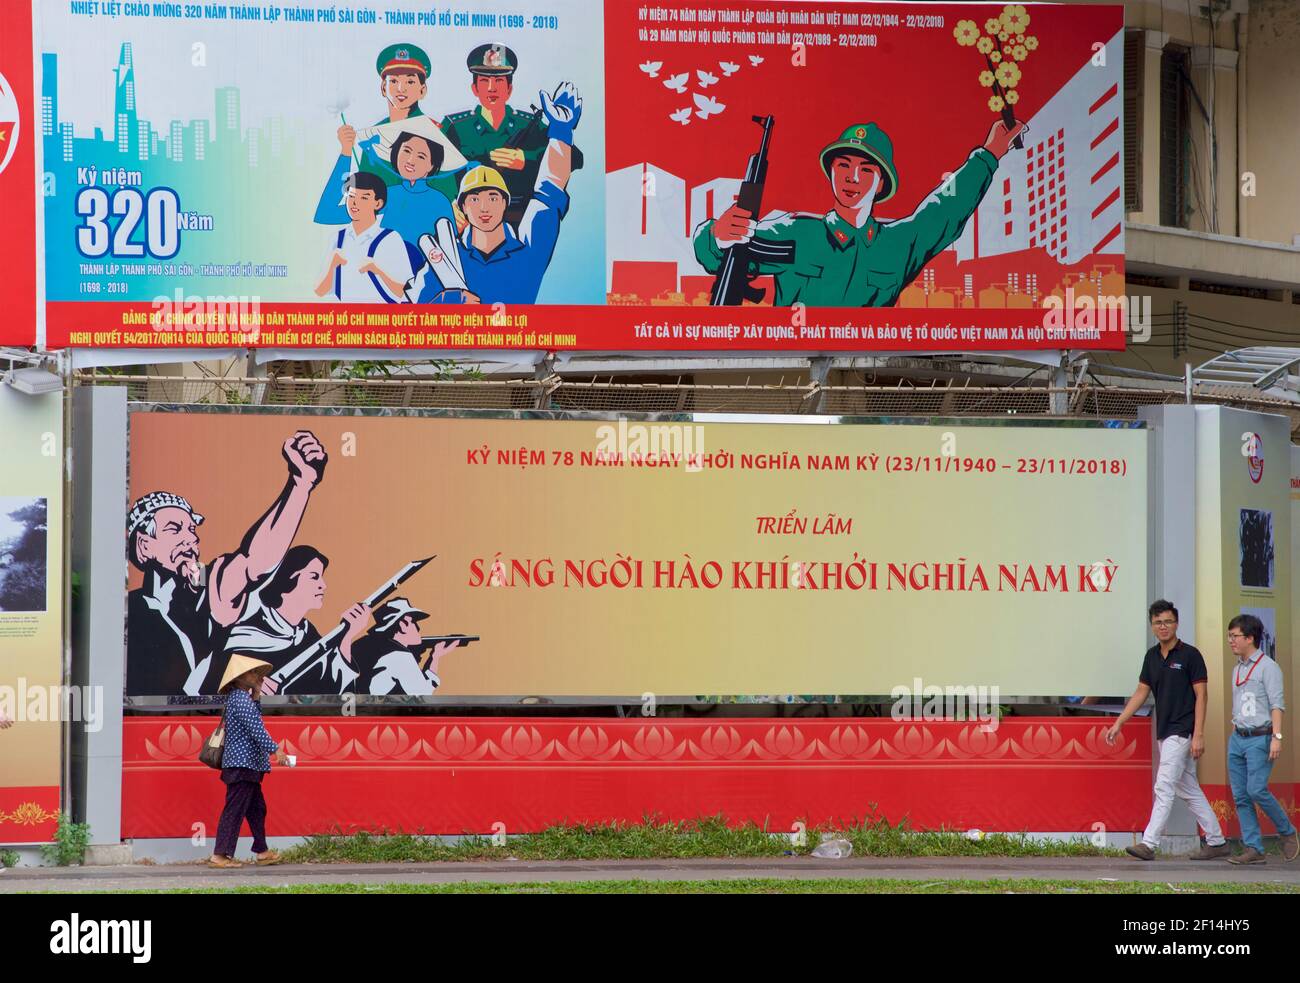 Panneaux d'affichage socialistes érigés dans le réseau Ho Chi Minh ville, Vietnam. Piétons Banque D'Images